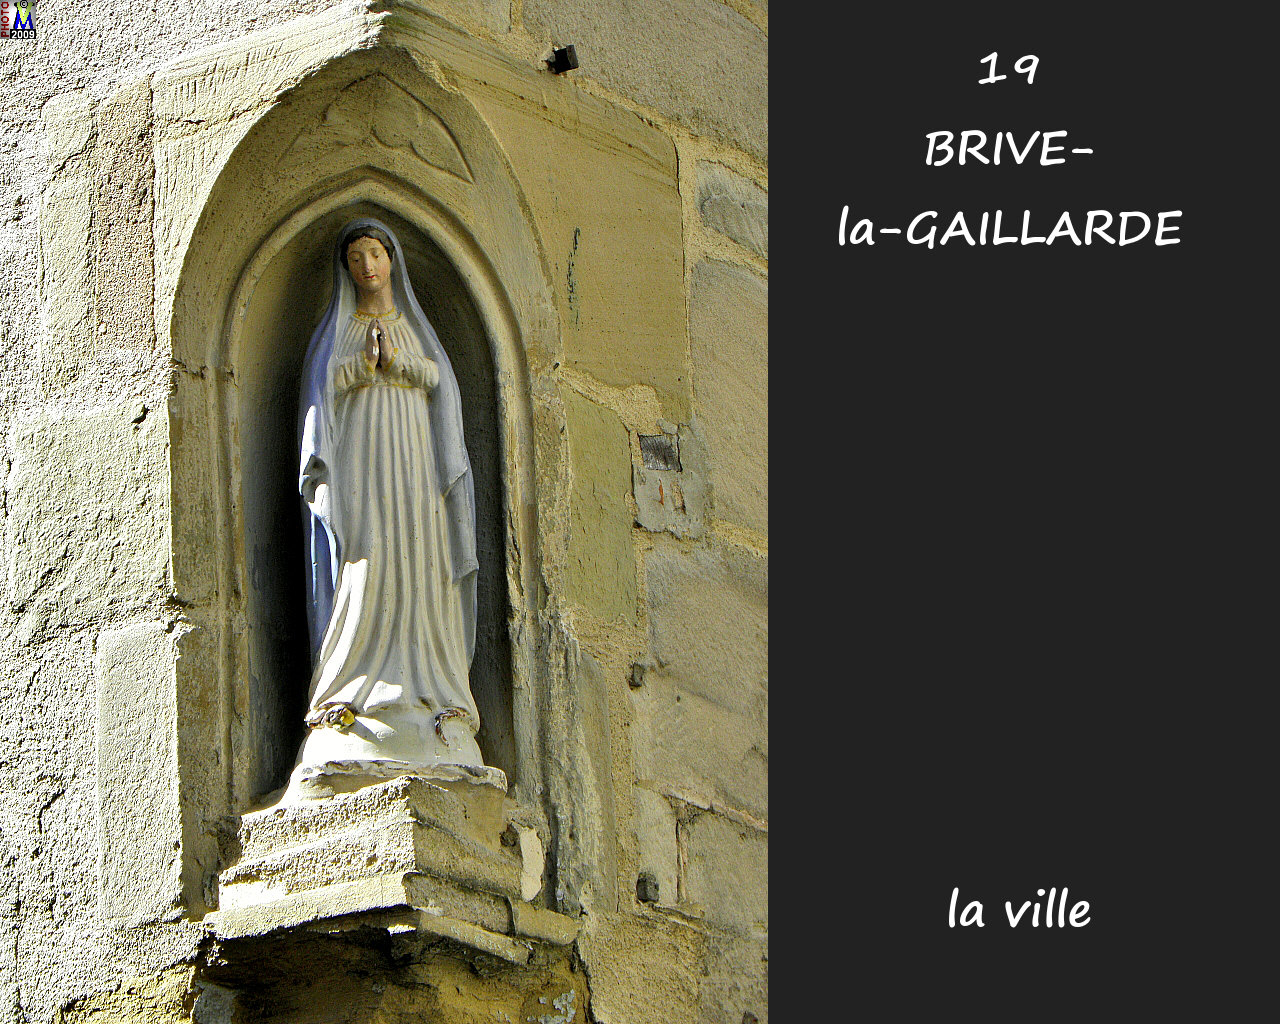 19BRIVE-GAILLARDE_ville_144.jpg